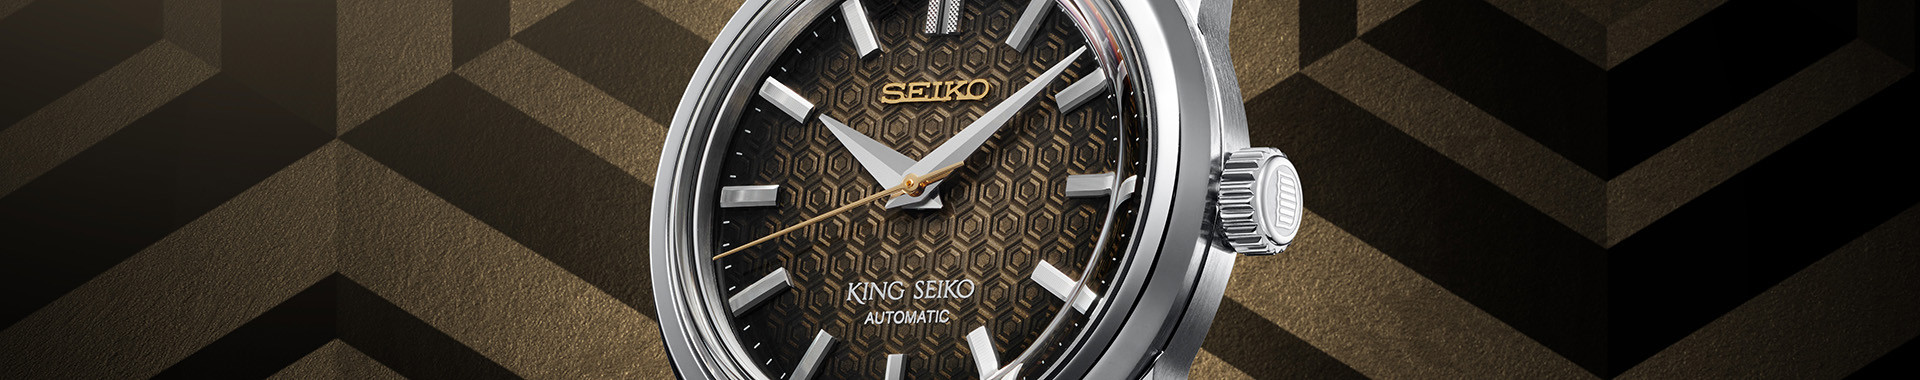 King Seiko : orologi lusso uomo - Seiko ufficiale